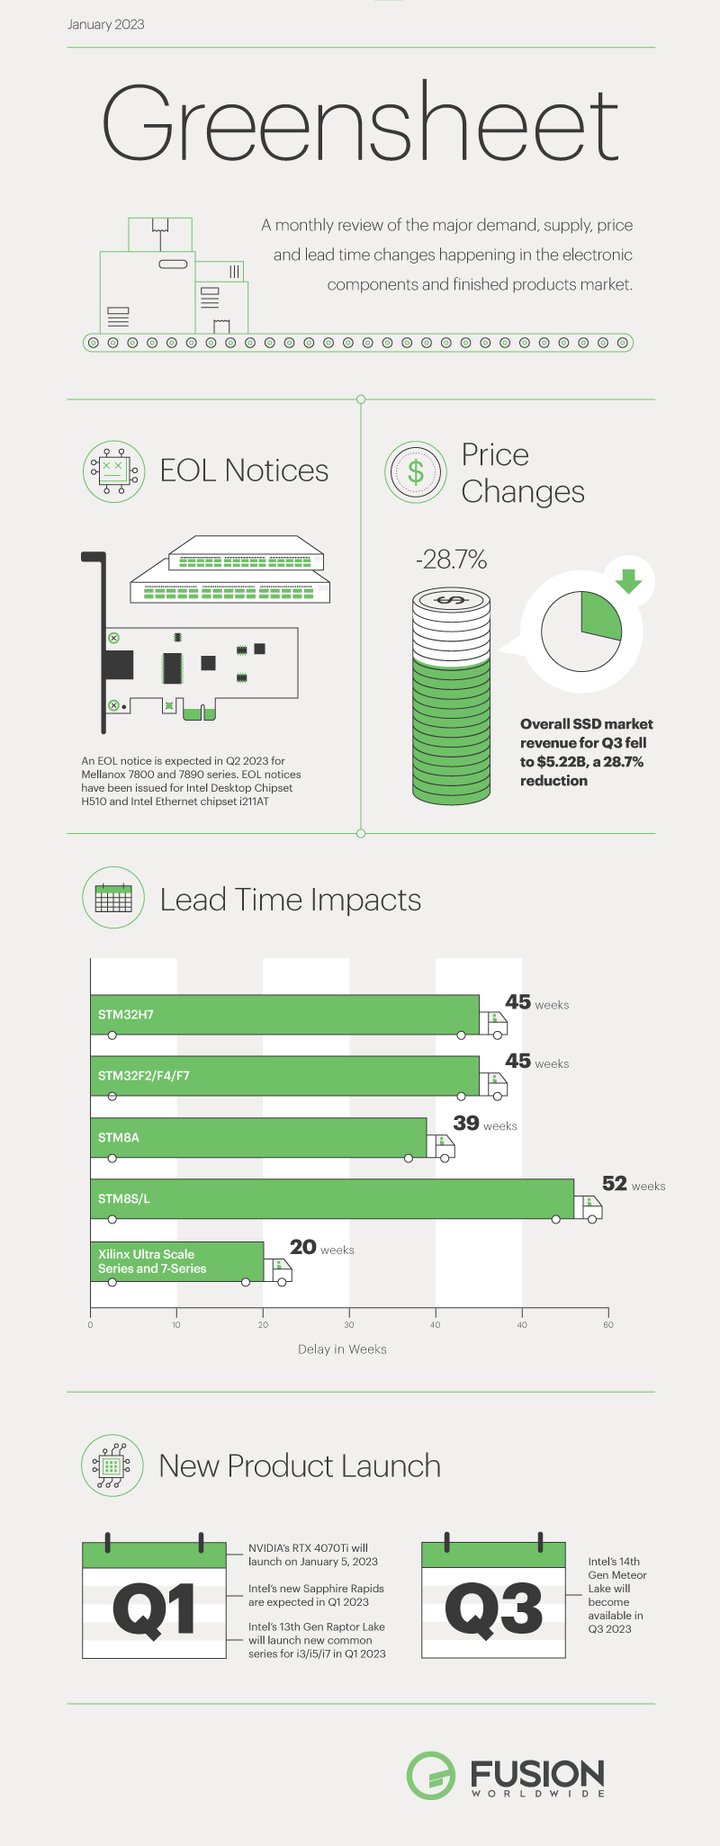 greensheet-infographic-jan-2023